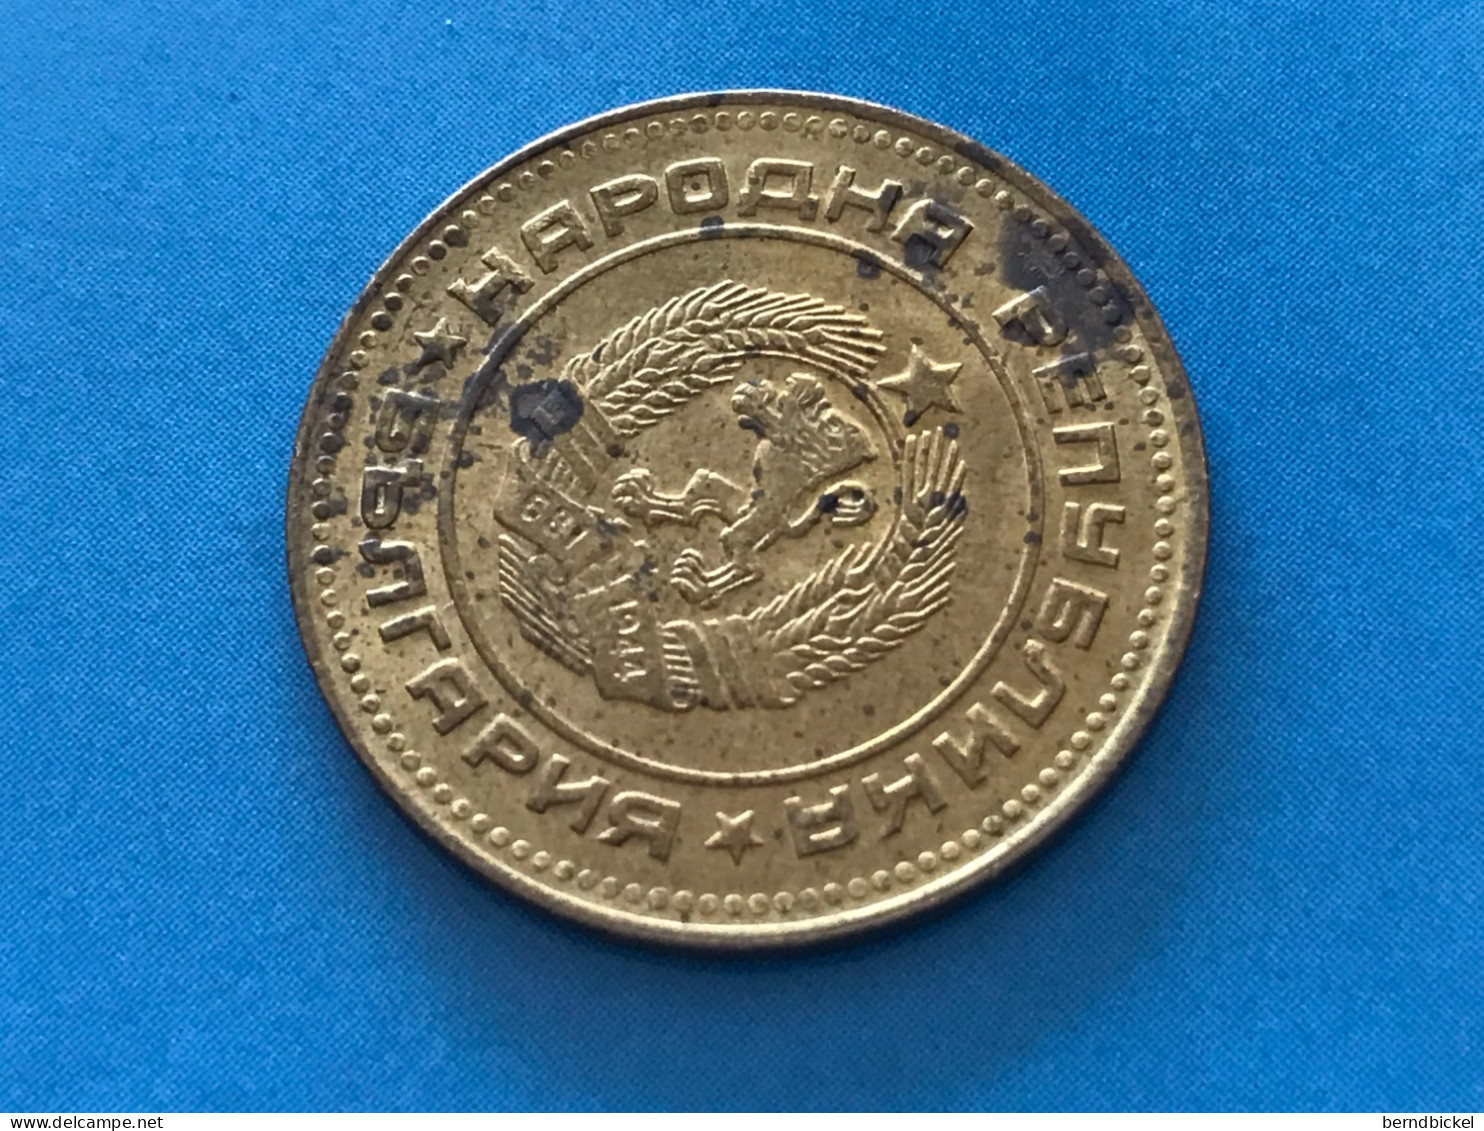 Münze Münzen Umlaufmünze Bulgarien 5 Stotinki 1974 - Bulgaria